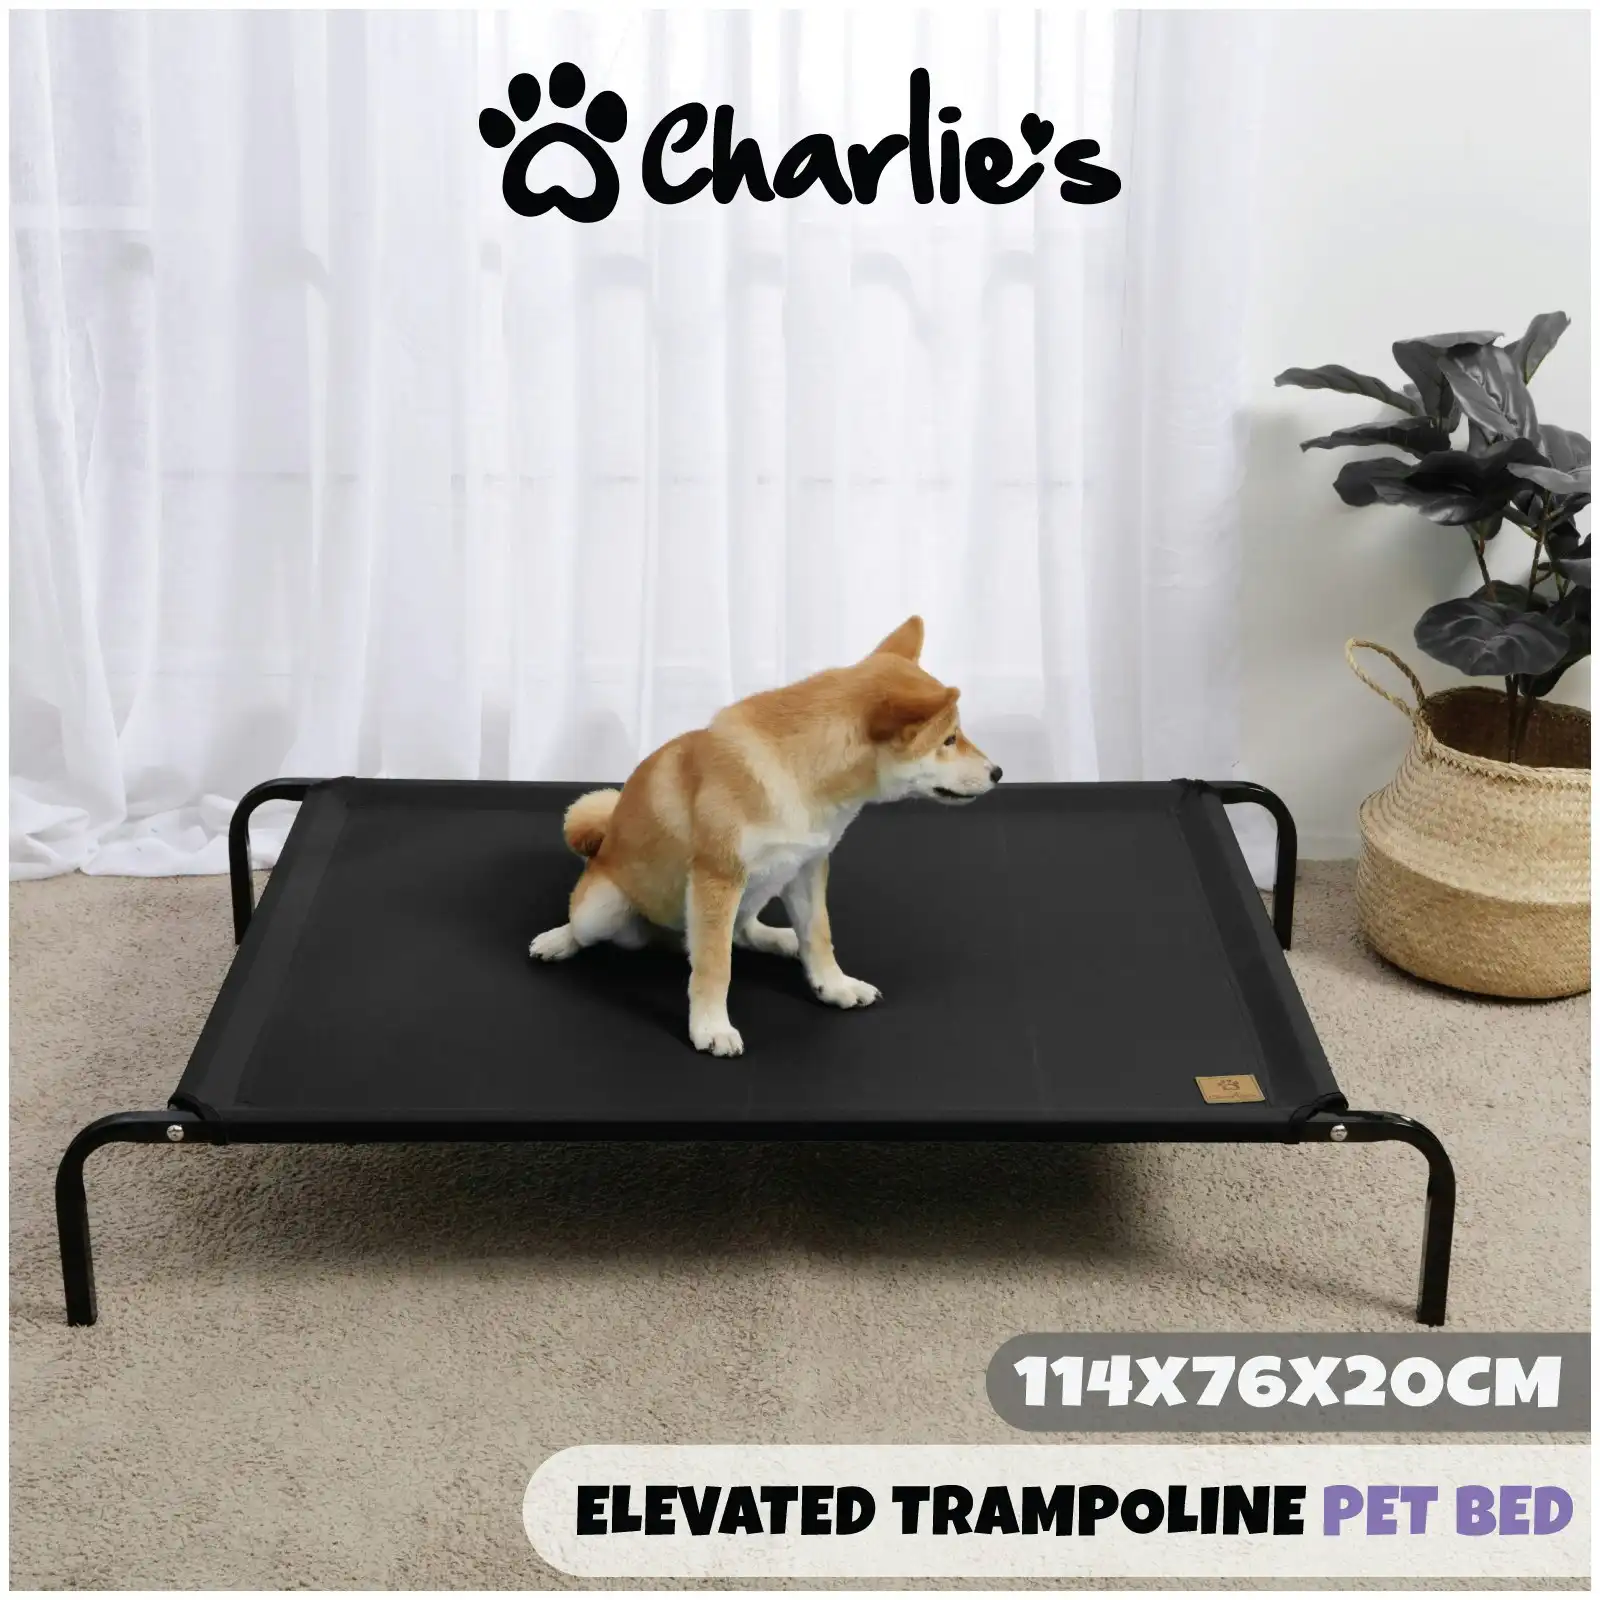 Charlie's Trampoline Hammock Bed Black Large